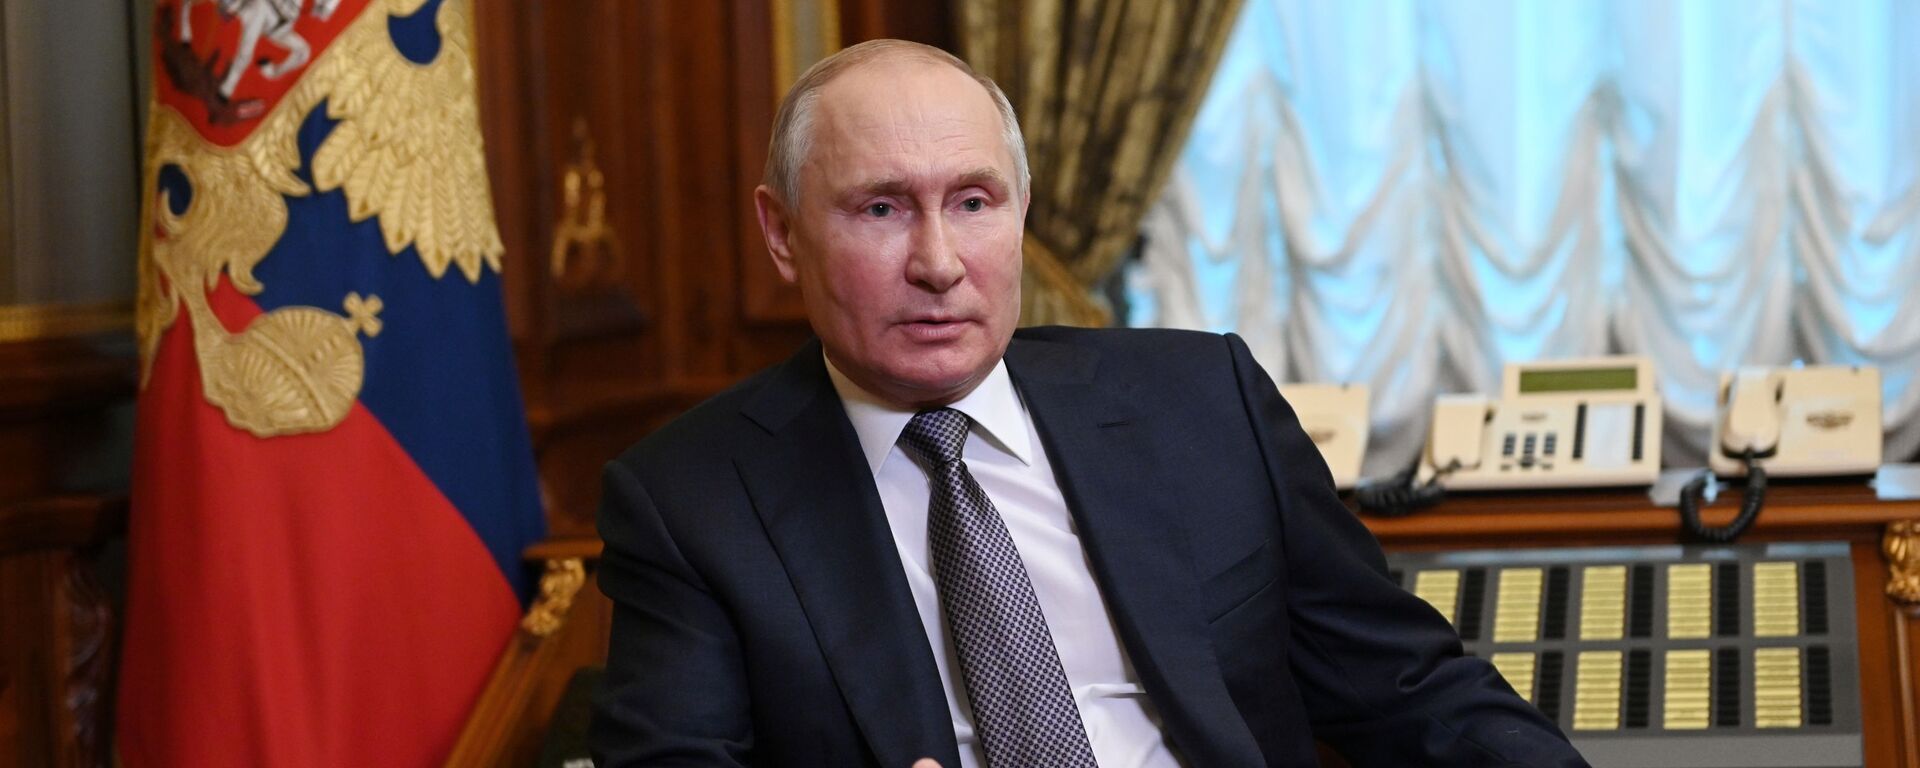 Tổng thống Nga Vladimir Putin trả lời câu hỏi - Sputnik Việt Nam, 1920, 02.11.2021